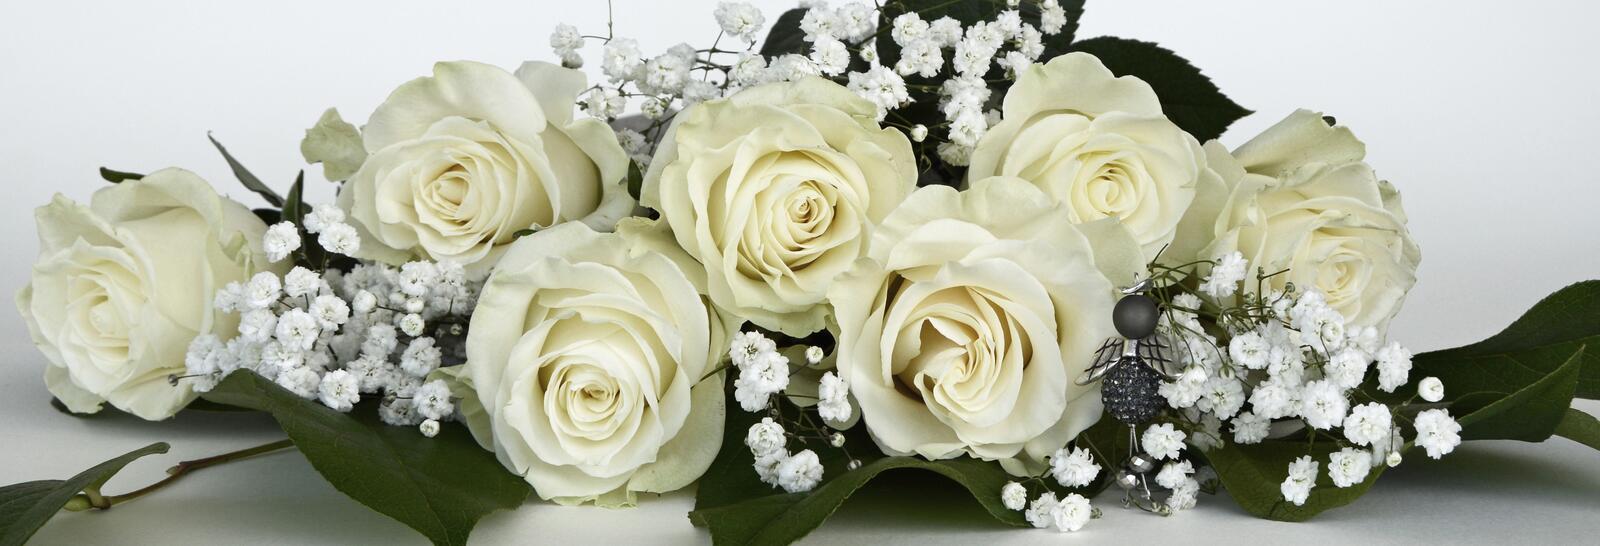 Бесплатное фото Белые розы